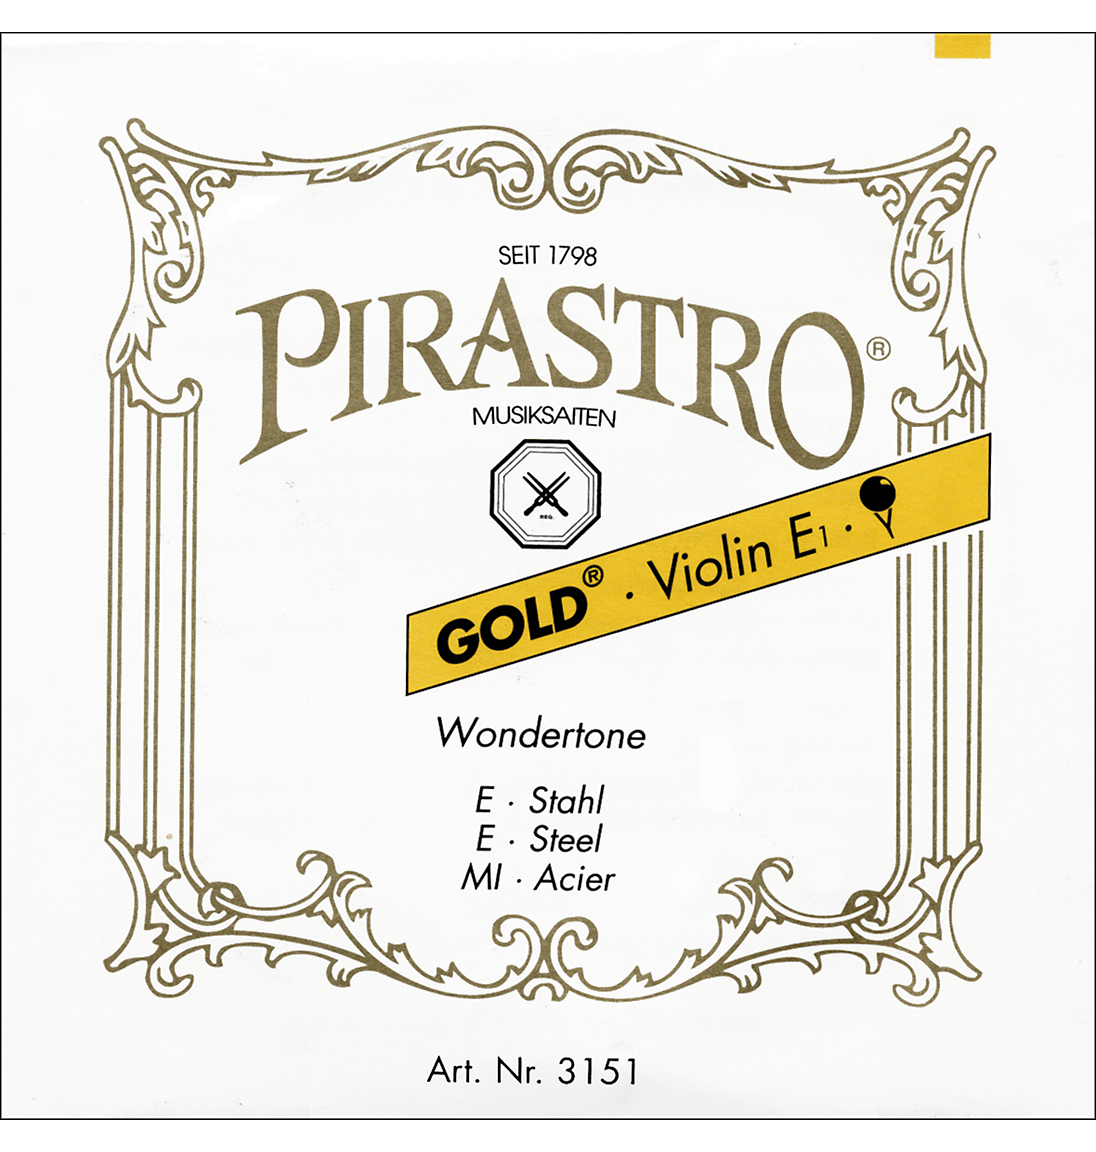 Pirastro Gold Label Series Violin Strings